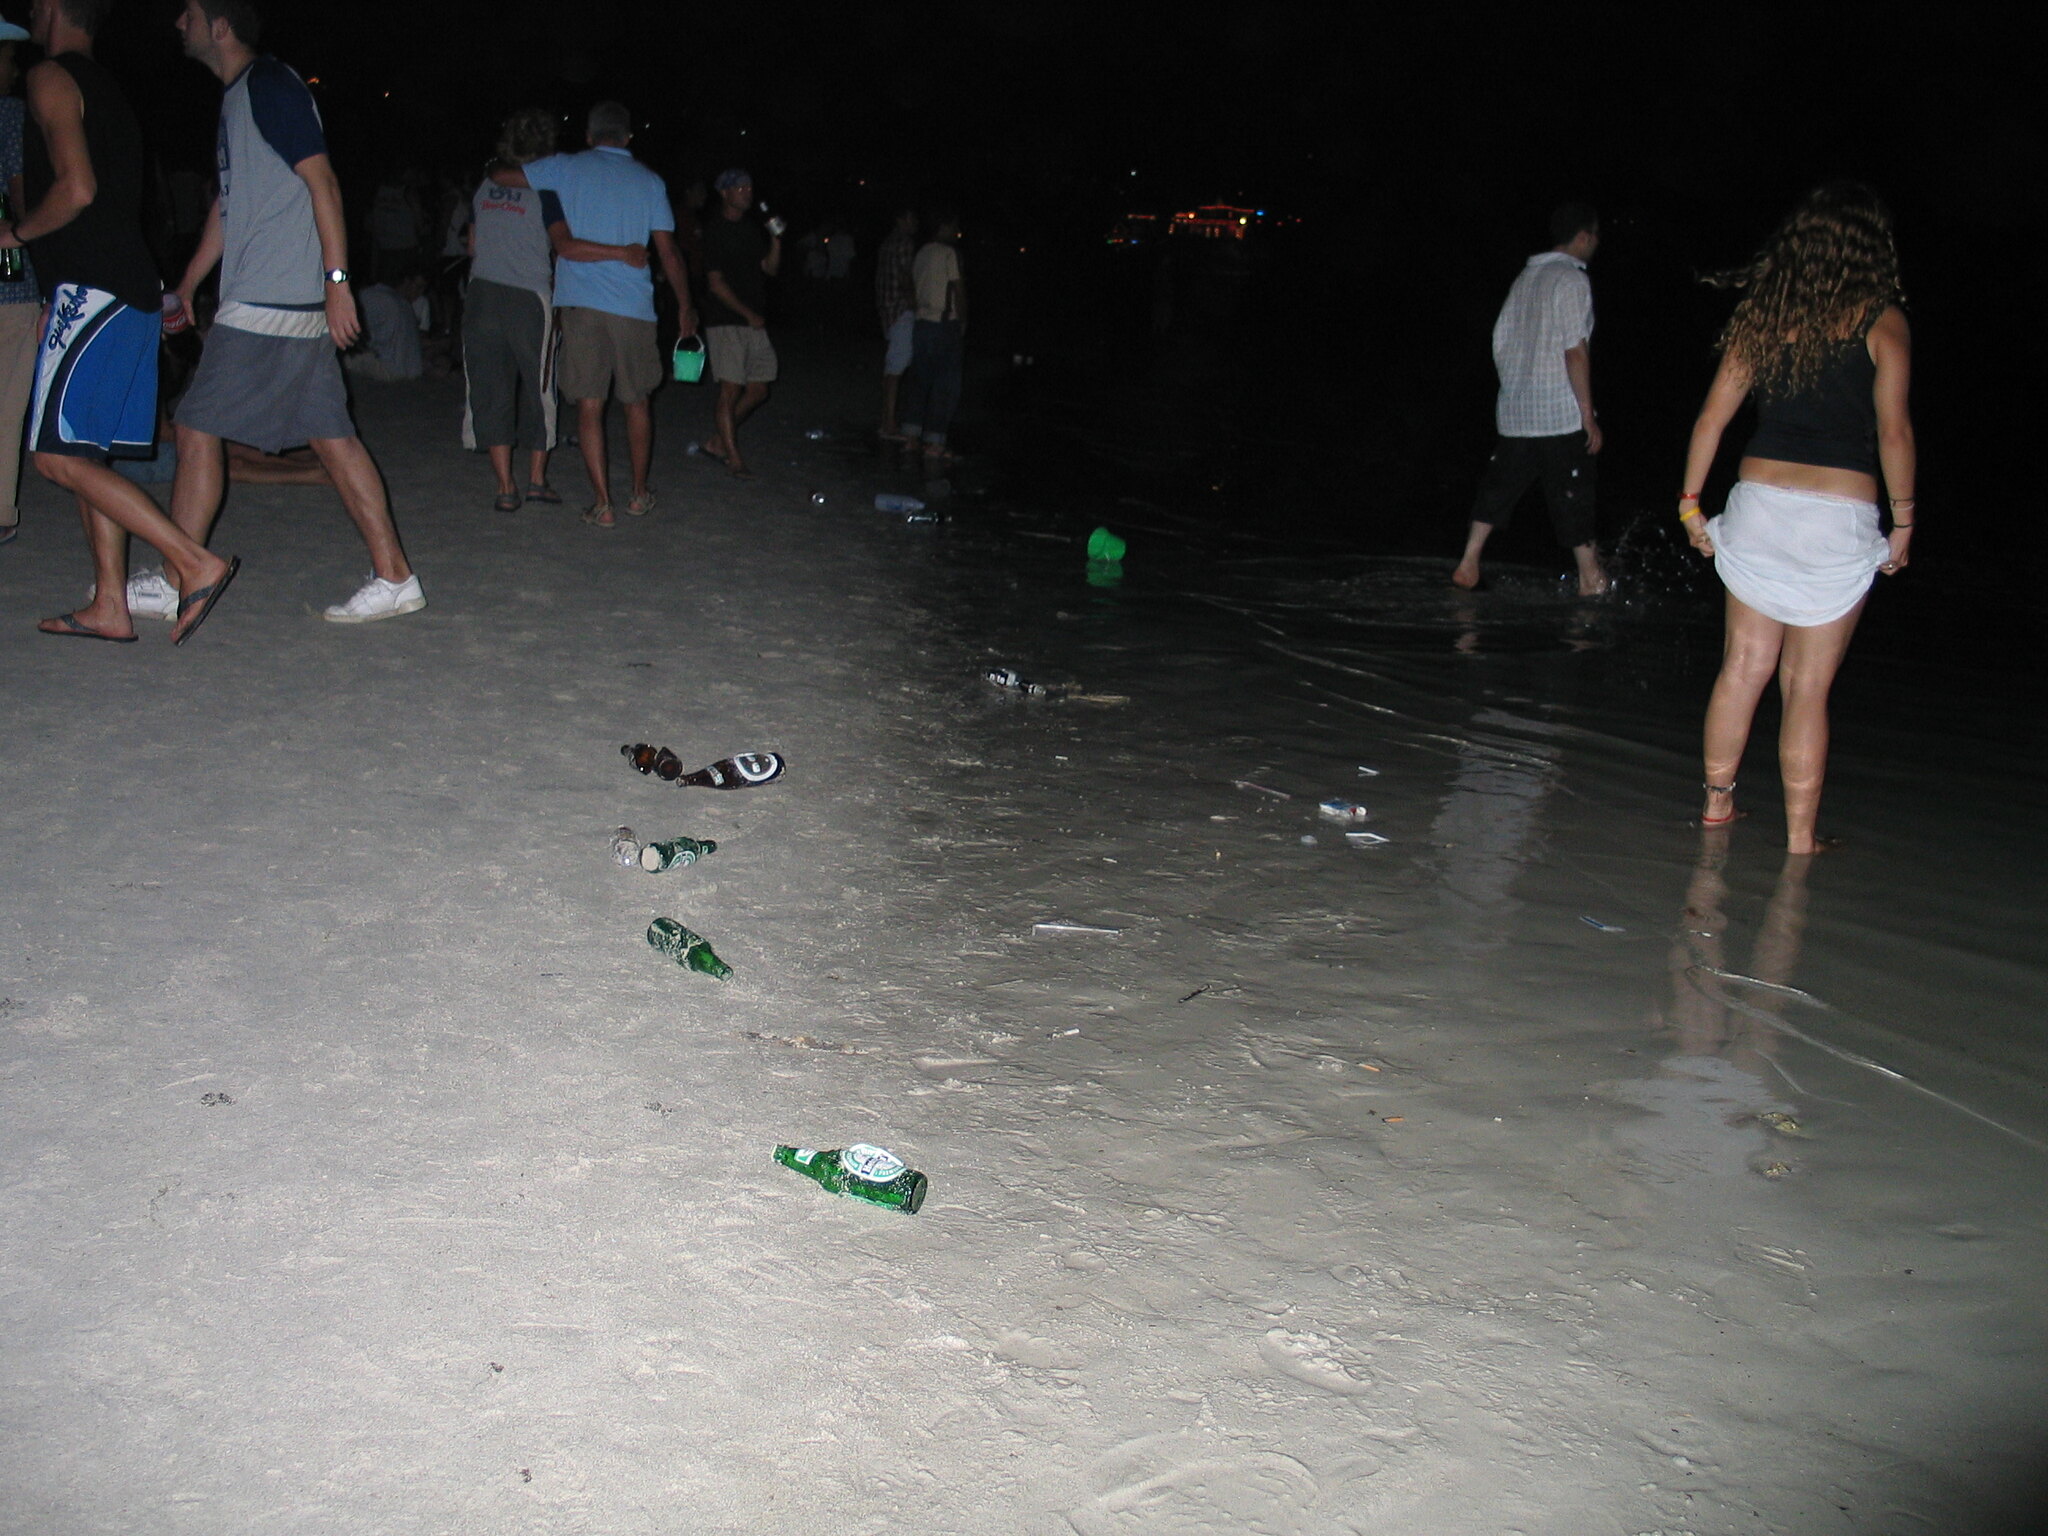 La gente en una playa por la noche le da la espalda a las botellas de cerveza dejadas en la arena.